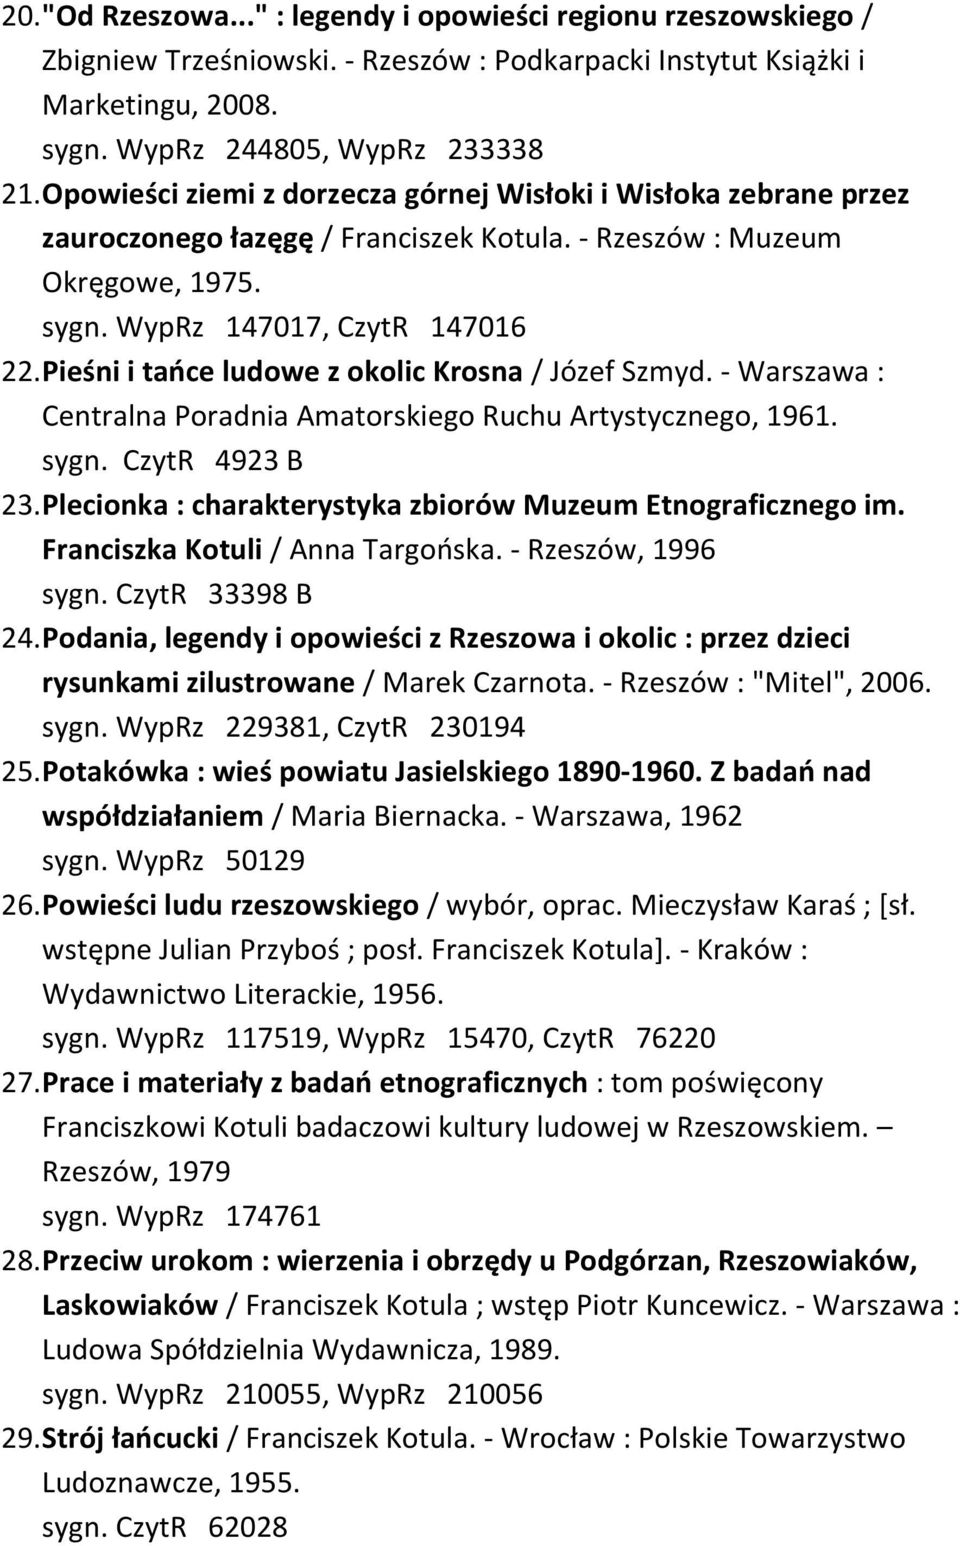 Pieśni i tańce ludowe z okolic Krosna / Józef Szmyd. - Warszawa : Centralna Poradnia Amatorskiego Ruchu Artystycznego, 1961. sygn. CzytR 4923 B 23.